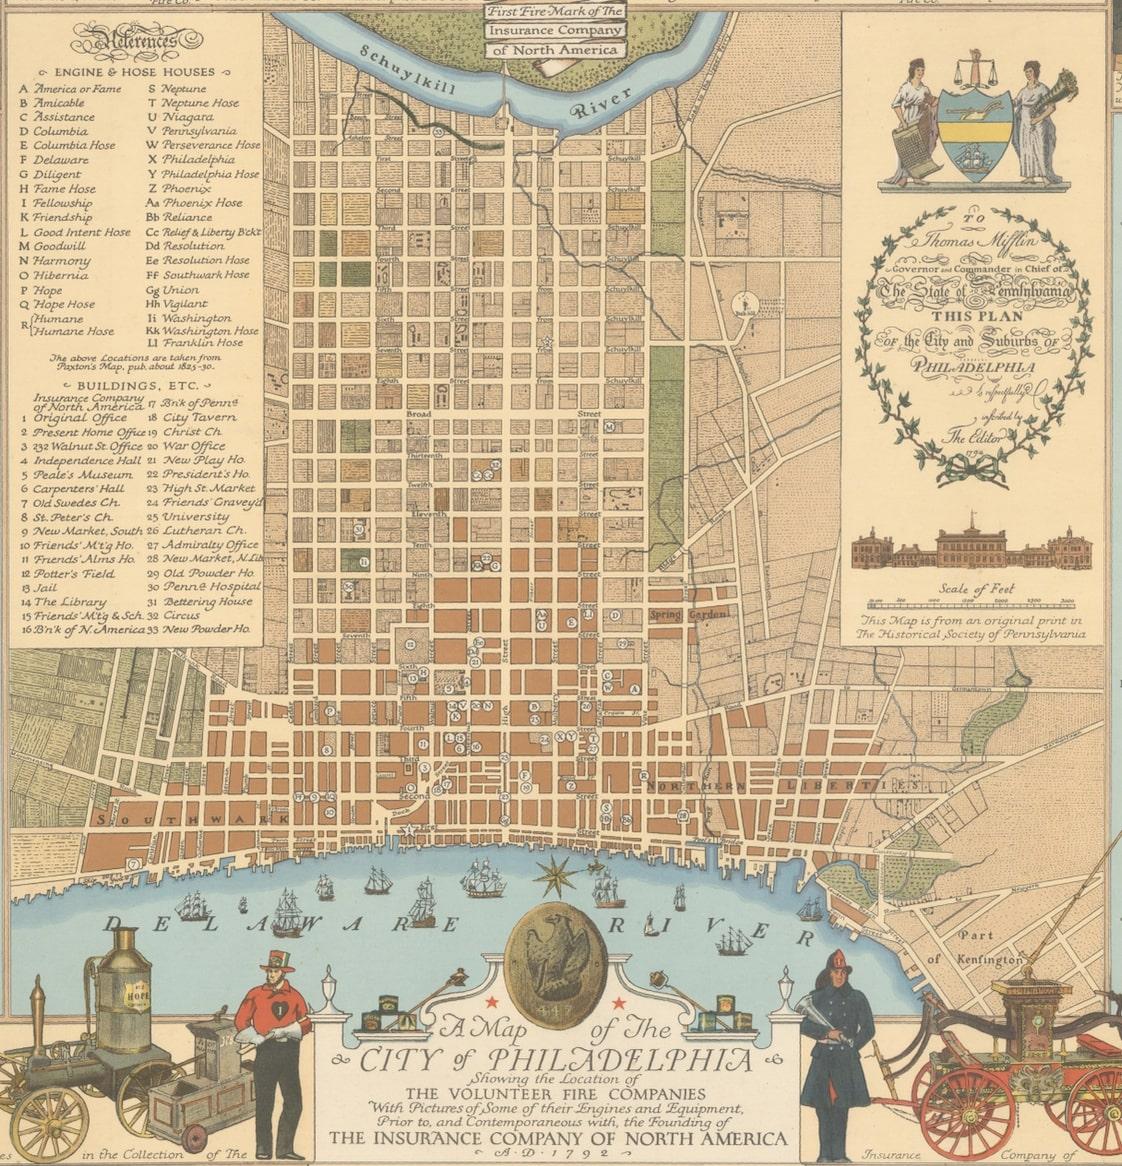 Diese aufwendige Karte von Philadelphia in Pennsylvania diente als historische Hommage an die ersten freiwilligen Feuerwehren der Stadt. Sie wurde von Jacob Riegel gezeichnet und von der Insurance Company of North America (INA) veröffentlicht. Die